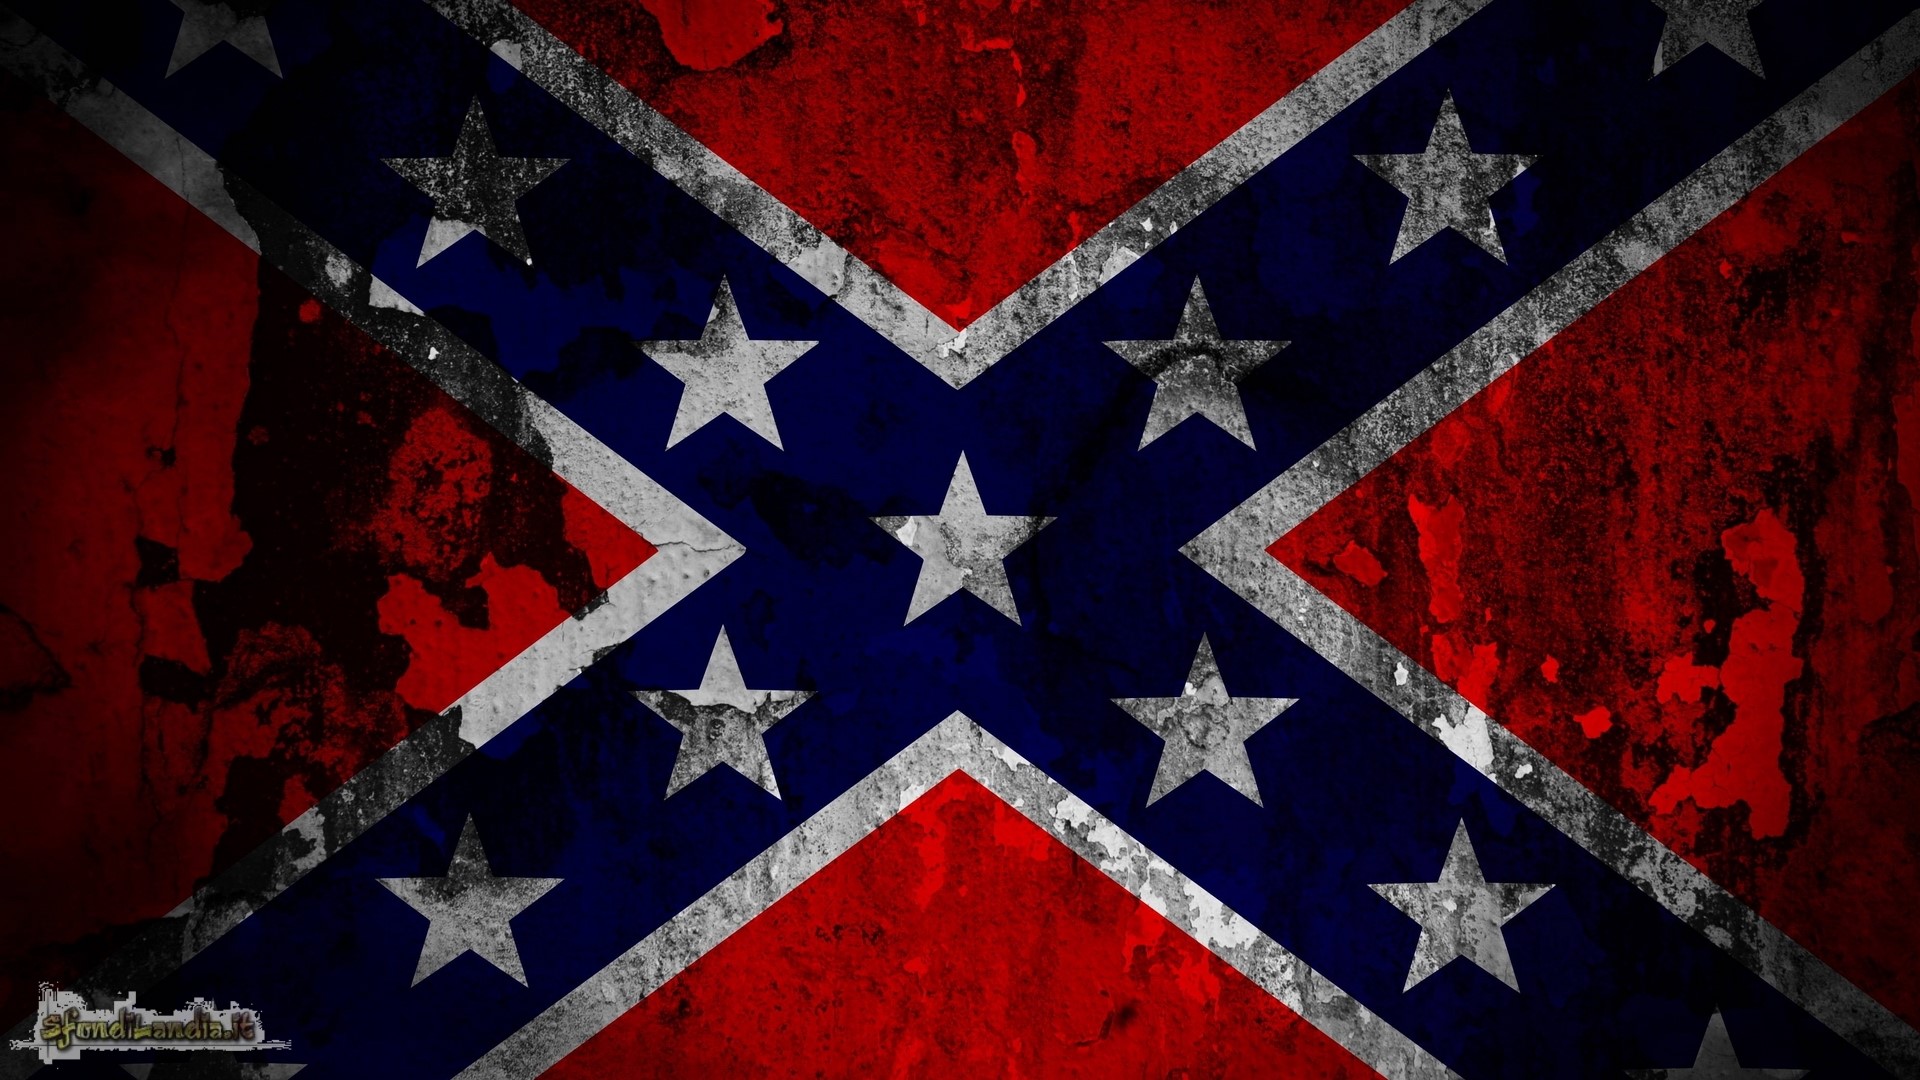 Confederate States